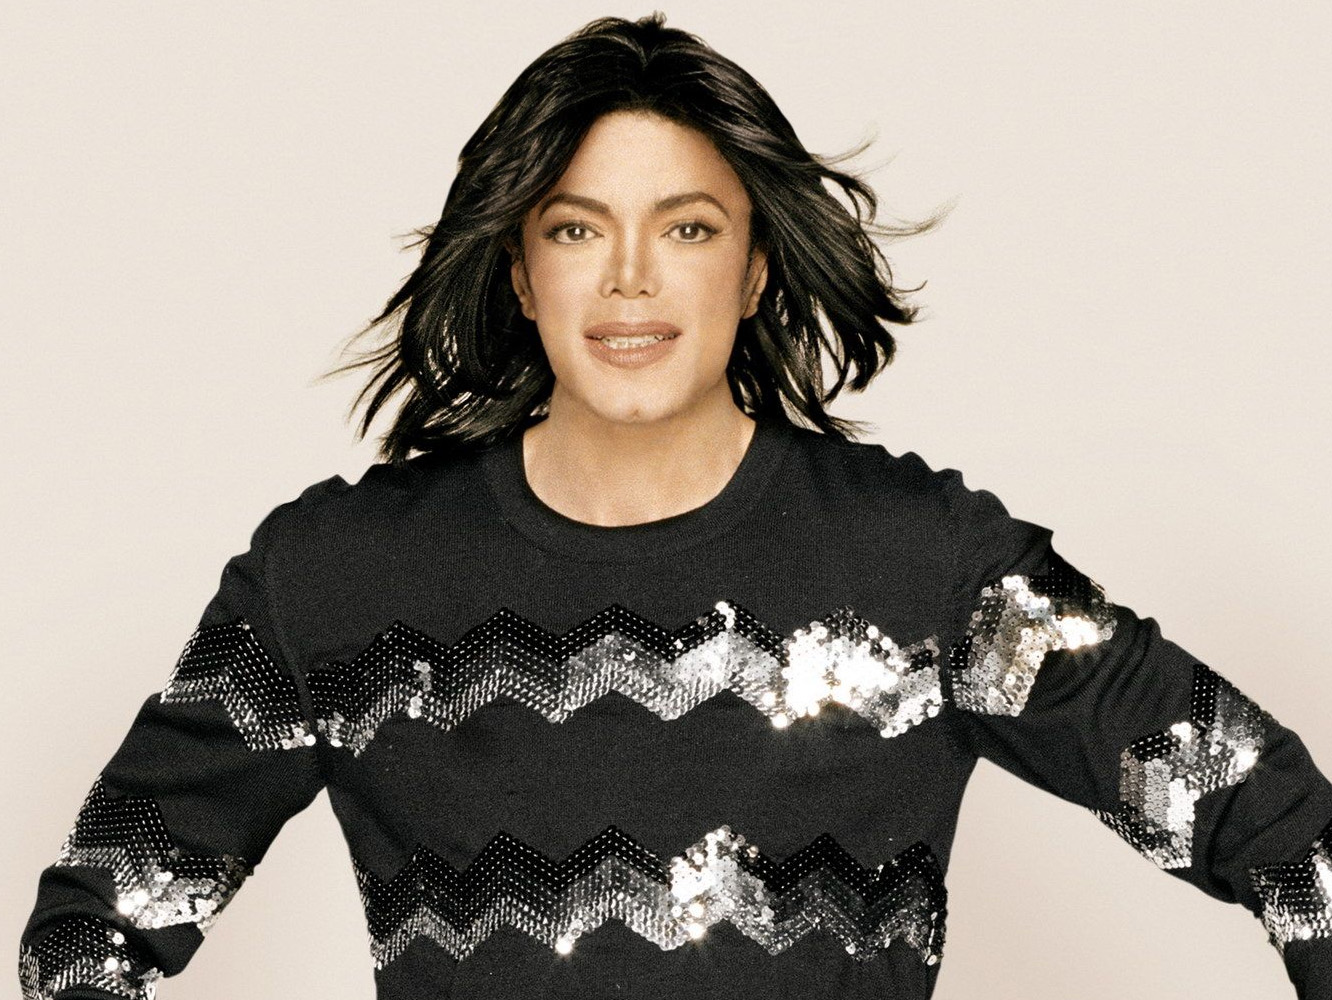  Mark Ronson publica un mash-up de Michael Jackson por su 60 cumpleaños